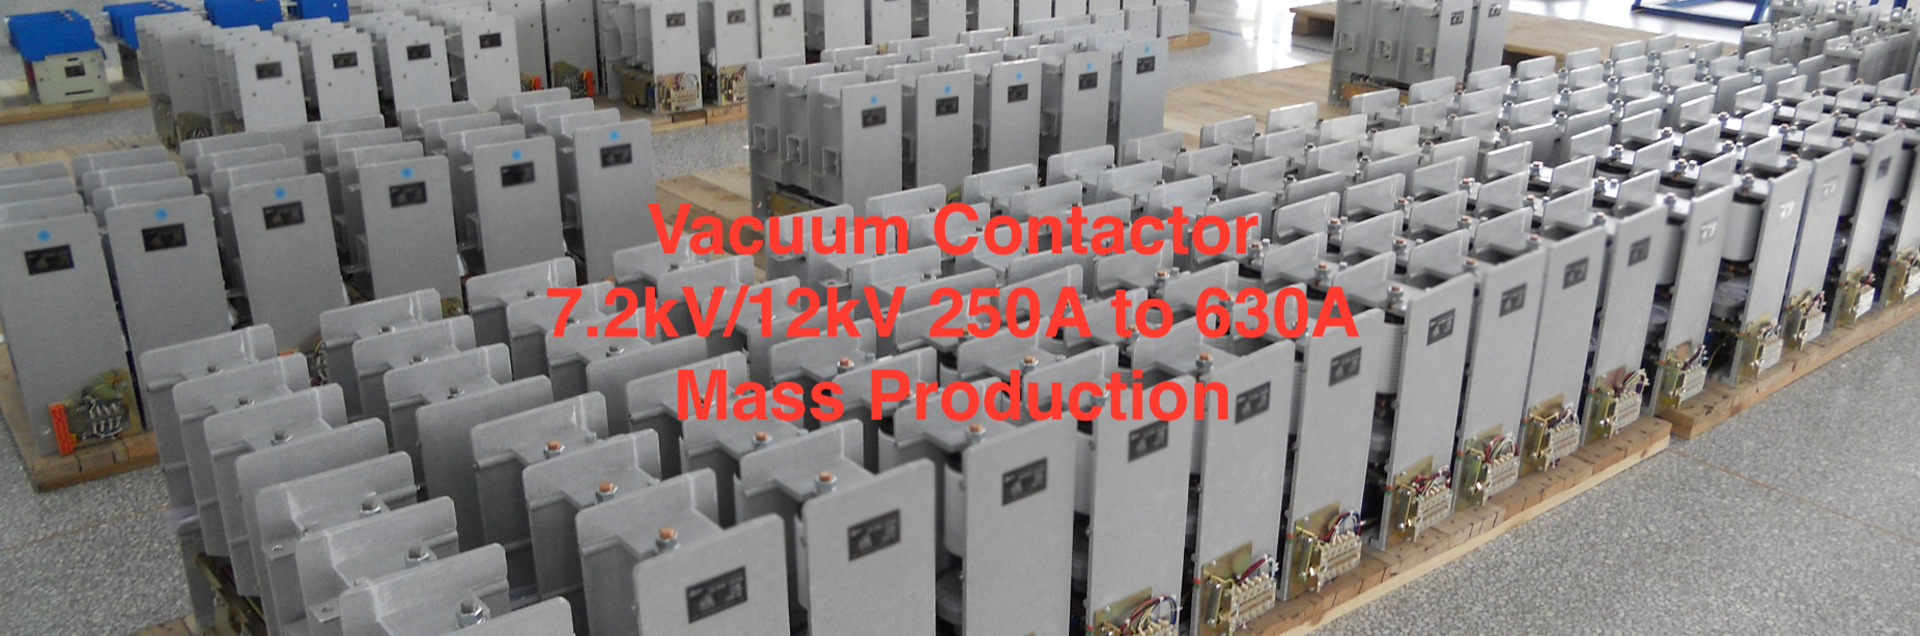 High Voltage Vacuum Contactors